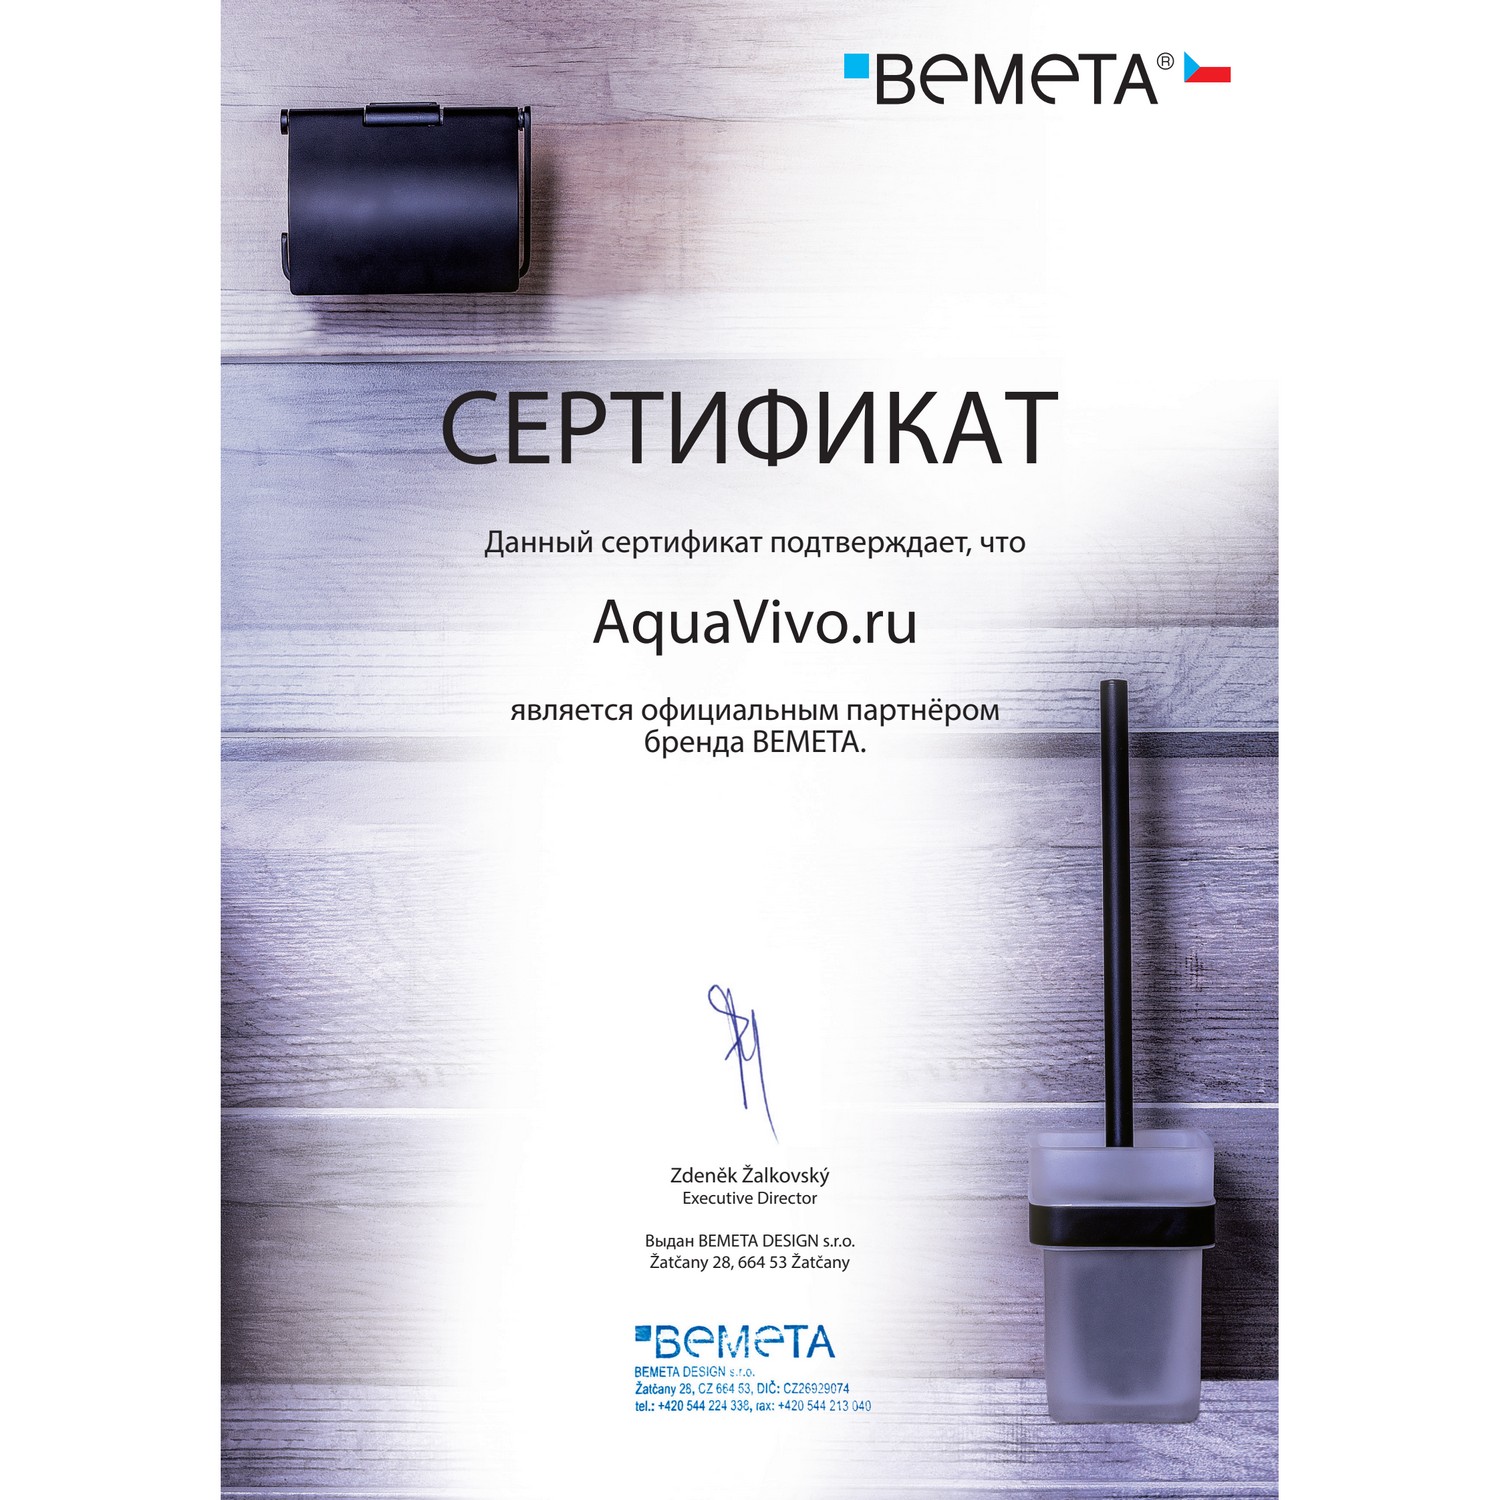 Bemeta Omega 301501131 Держатель для откидного зеркала